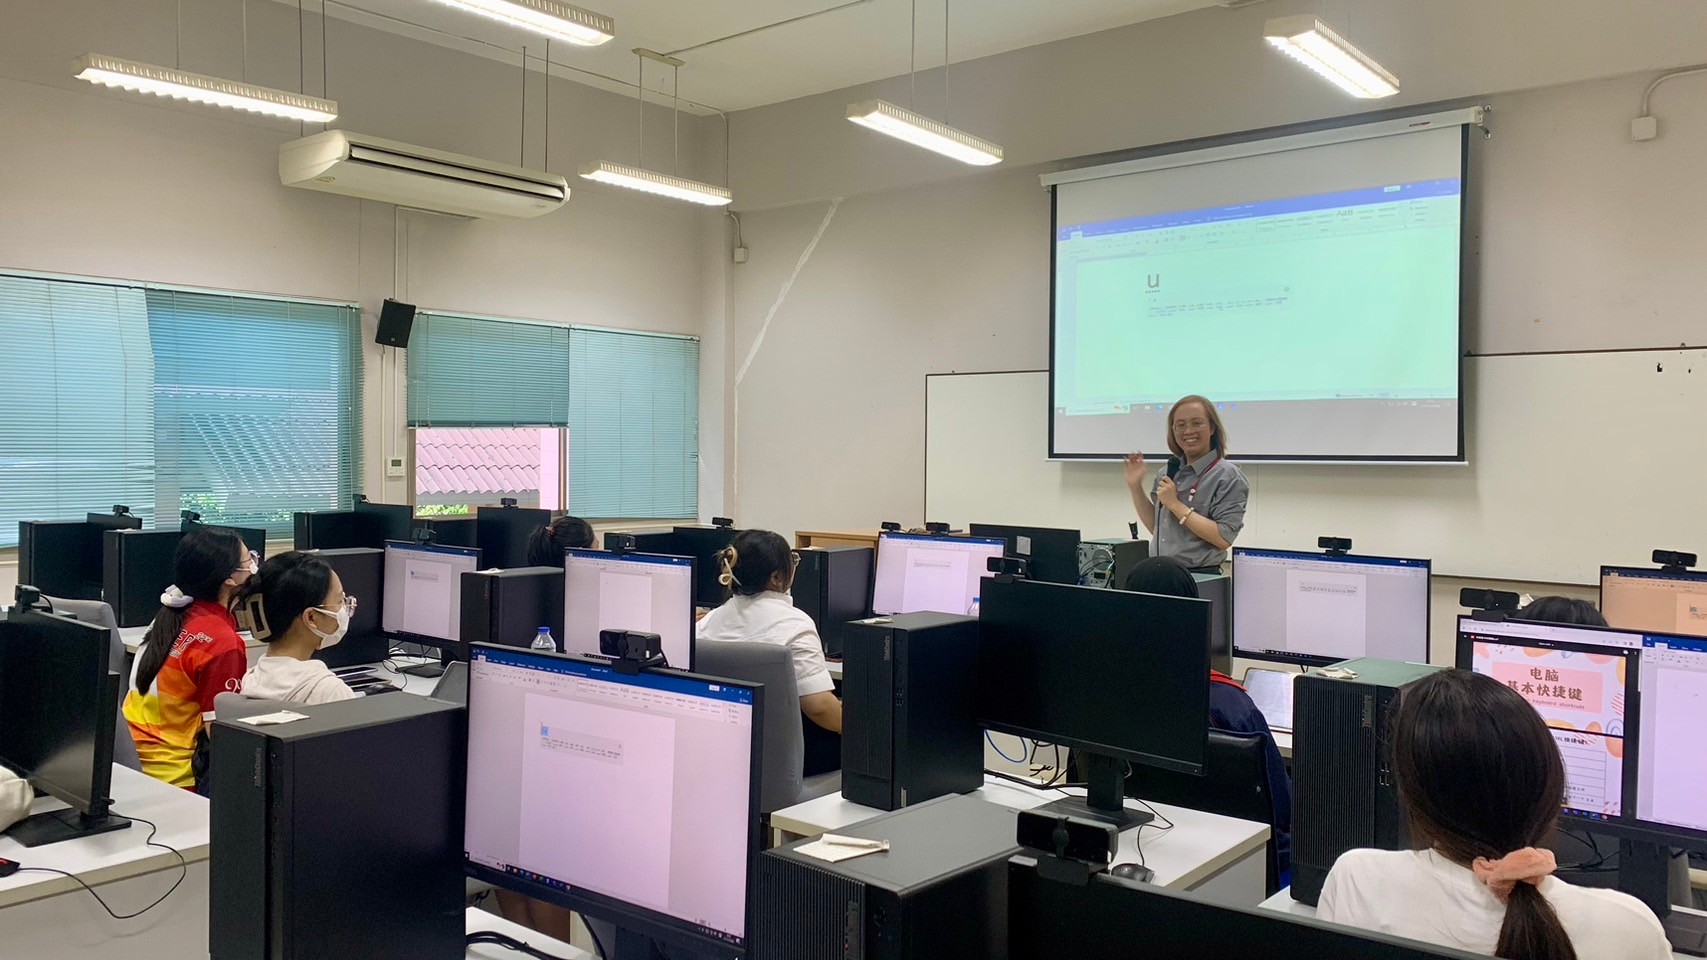 สำนักวิชาจีนวิทยาจัดอบรมทักษะการใช้คอมพิวเตอร์พื้นฐานให้แก่นักศึกษาชั้นปีที่ 4 และกิจกรรม Job Roadshow จากบริษัทชั้นนำ